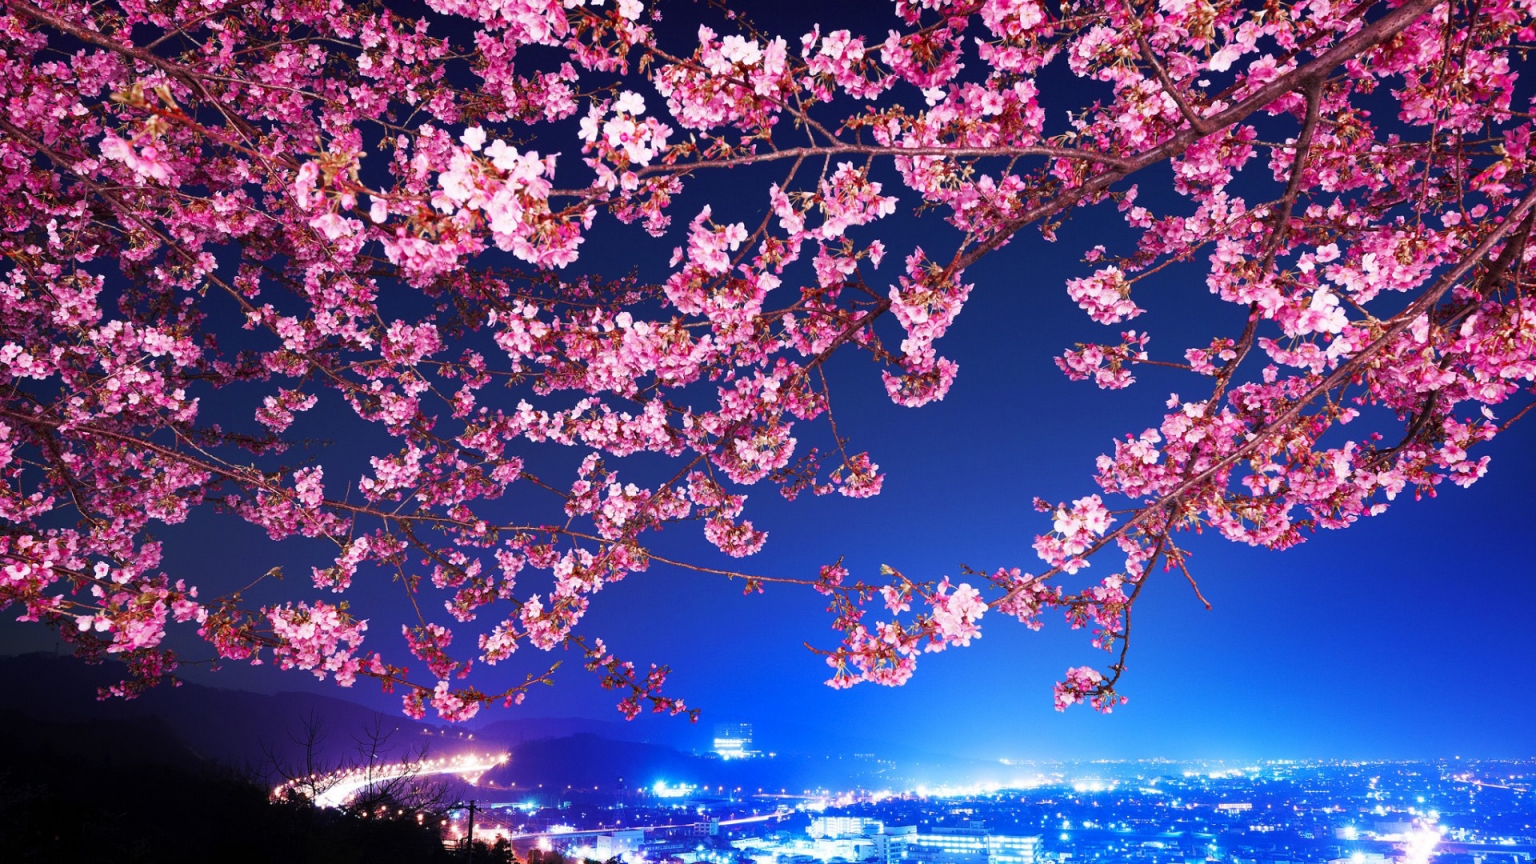 Lovely Cherry Blossom for 1536 x 864 HDTV resolution